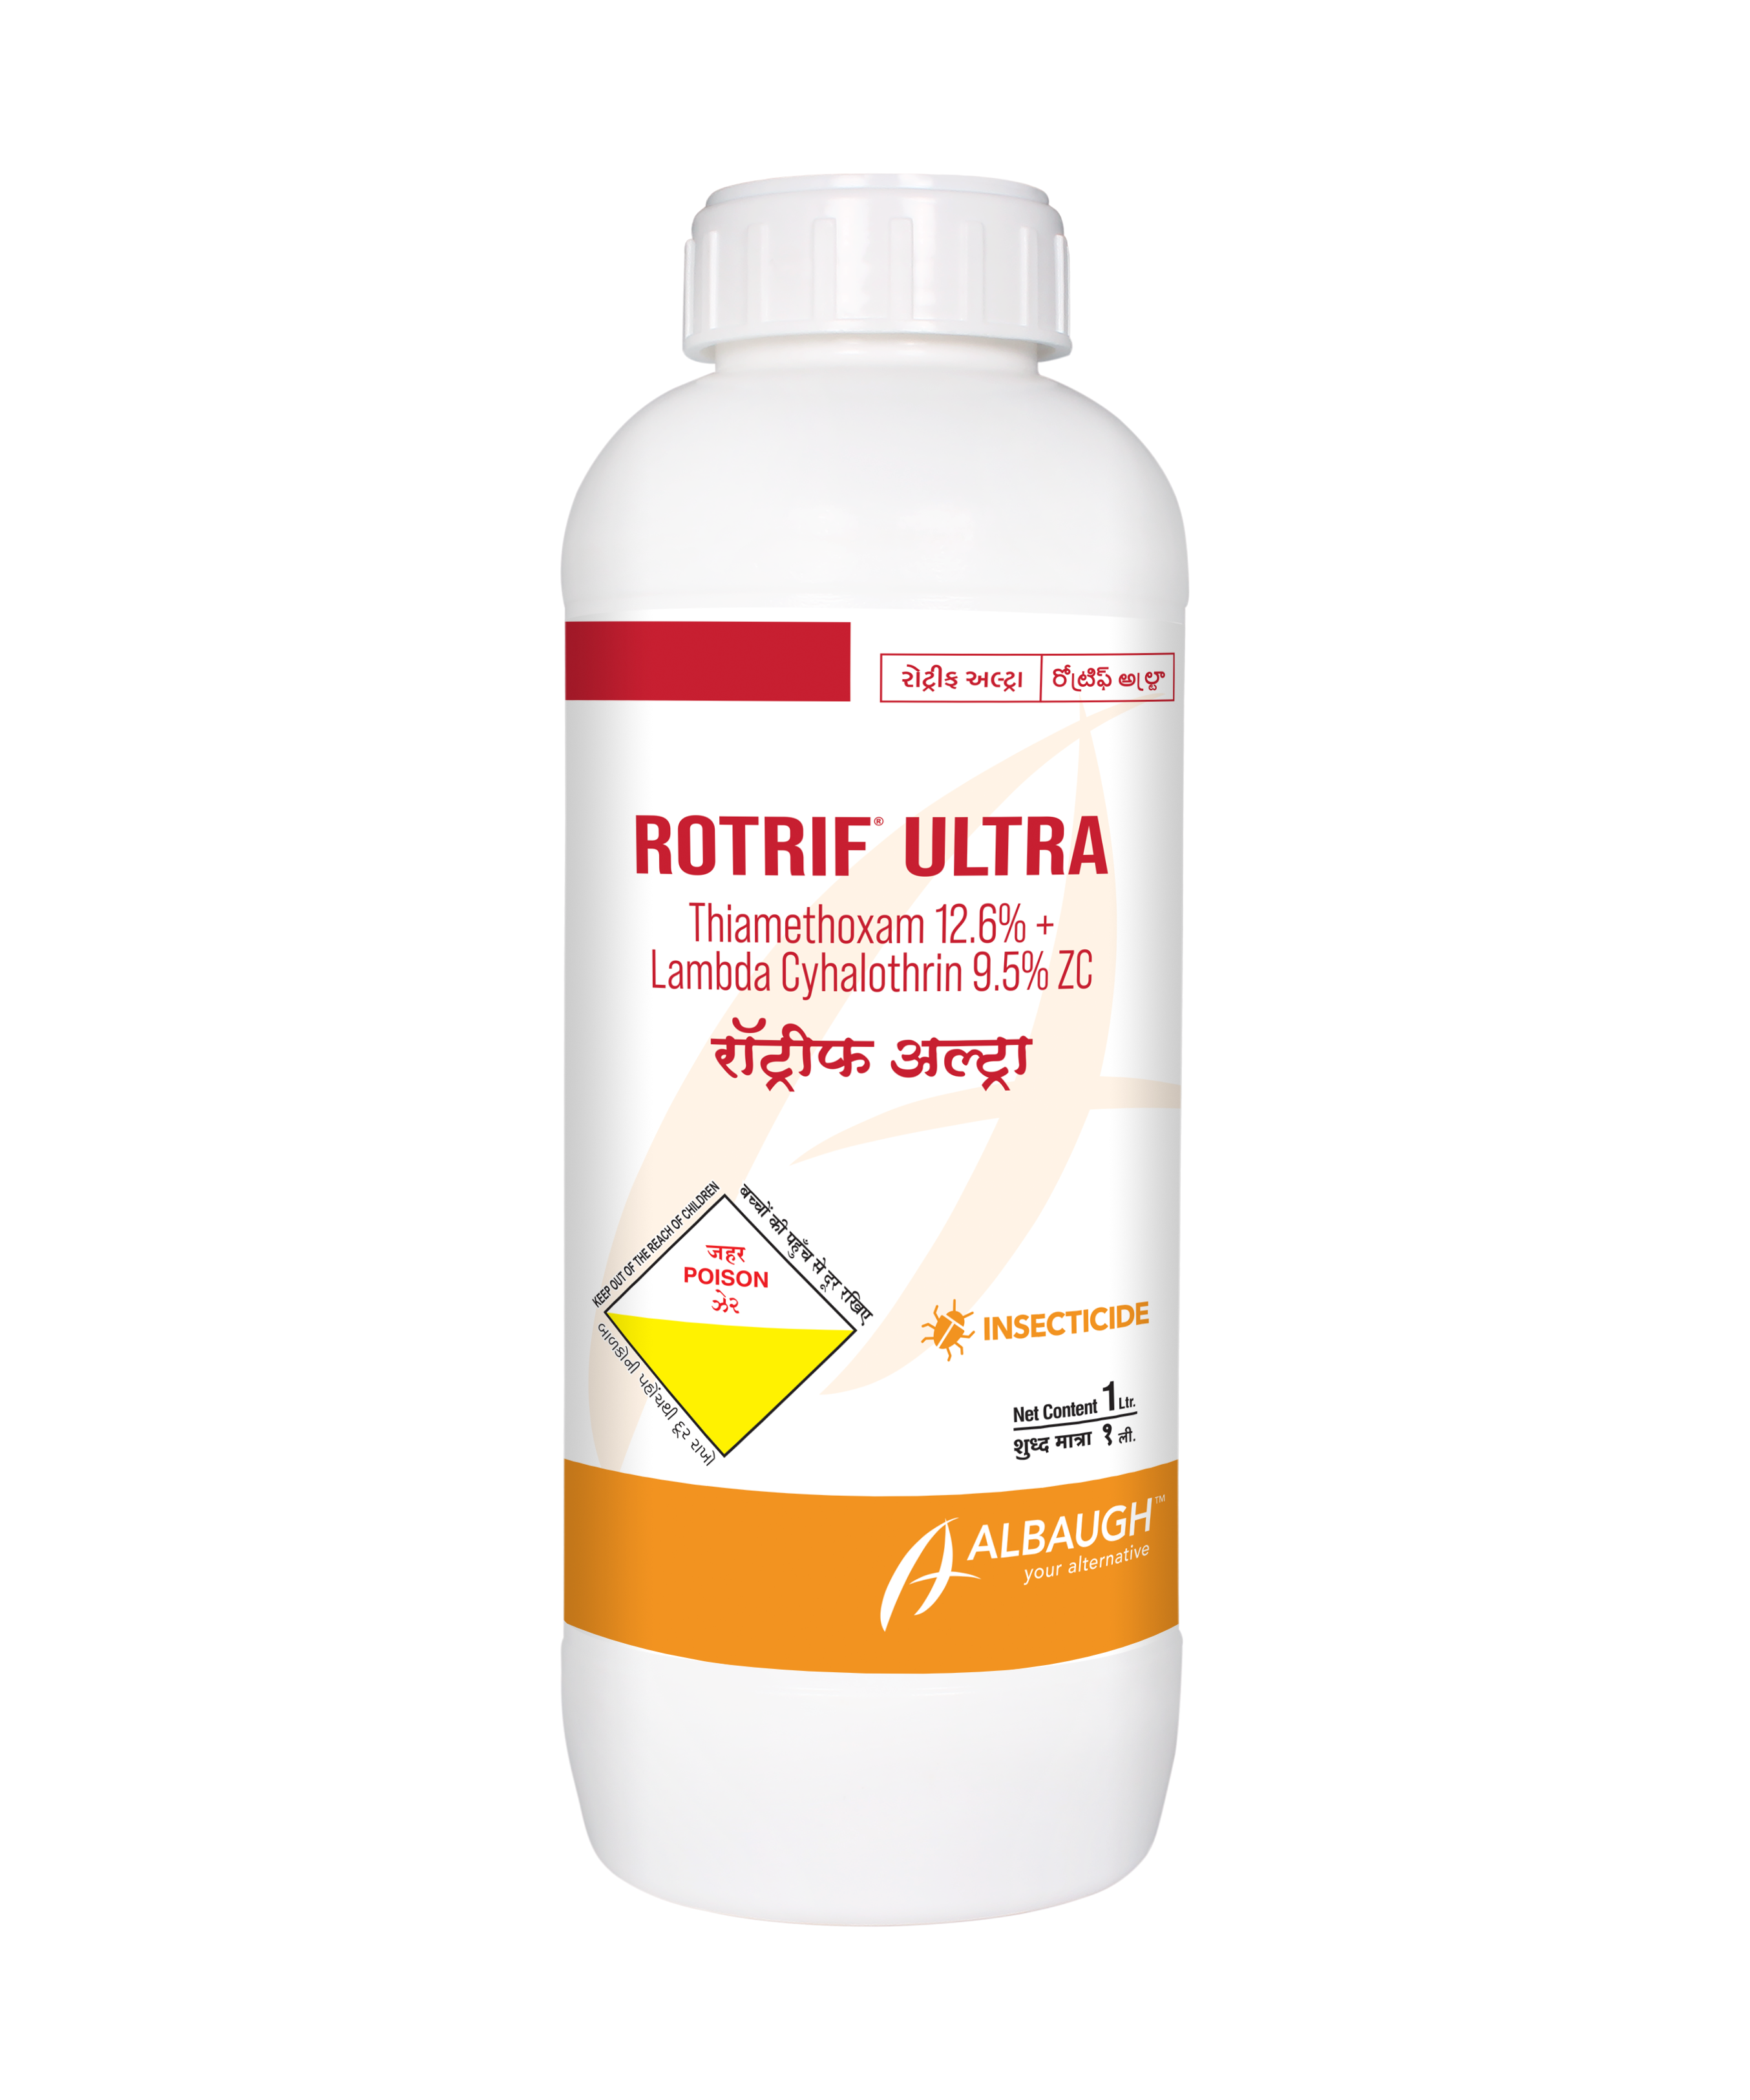 Rotrif Ultra: Thiamethoxam 12.6% + Lambda Cyhalothrin 9.5% ZC